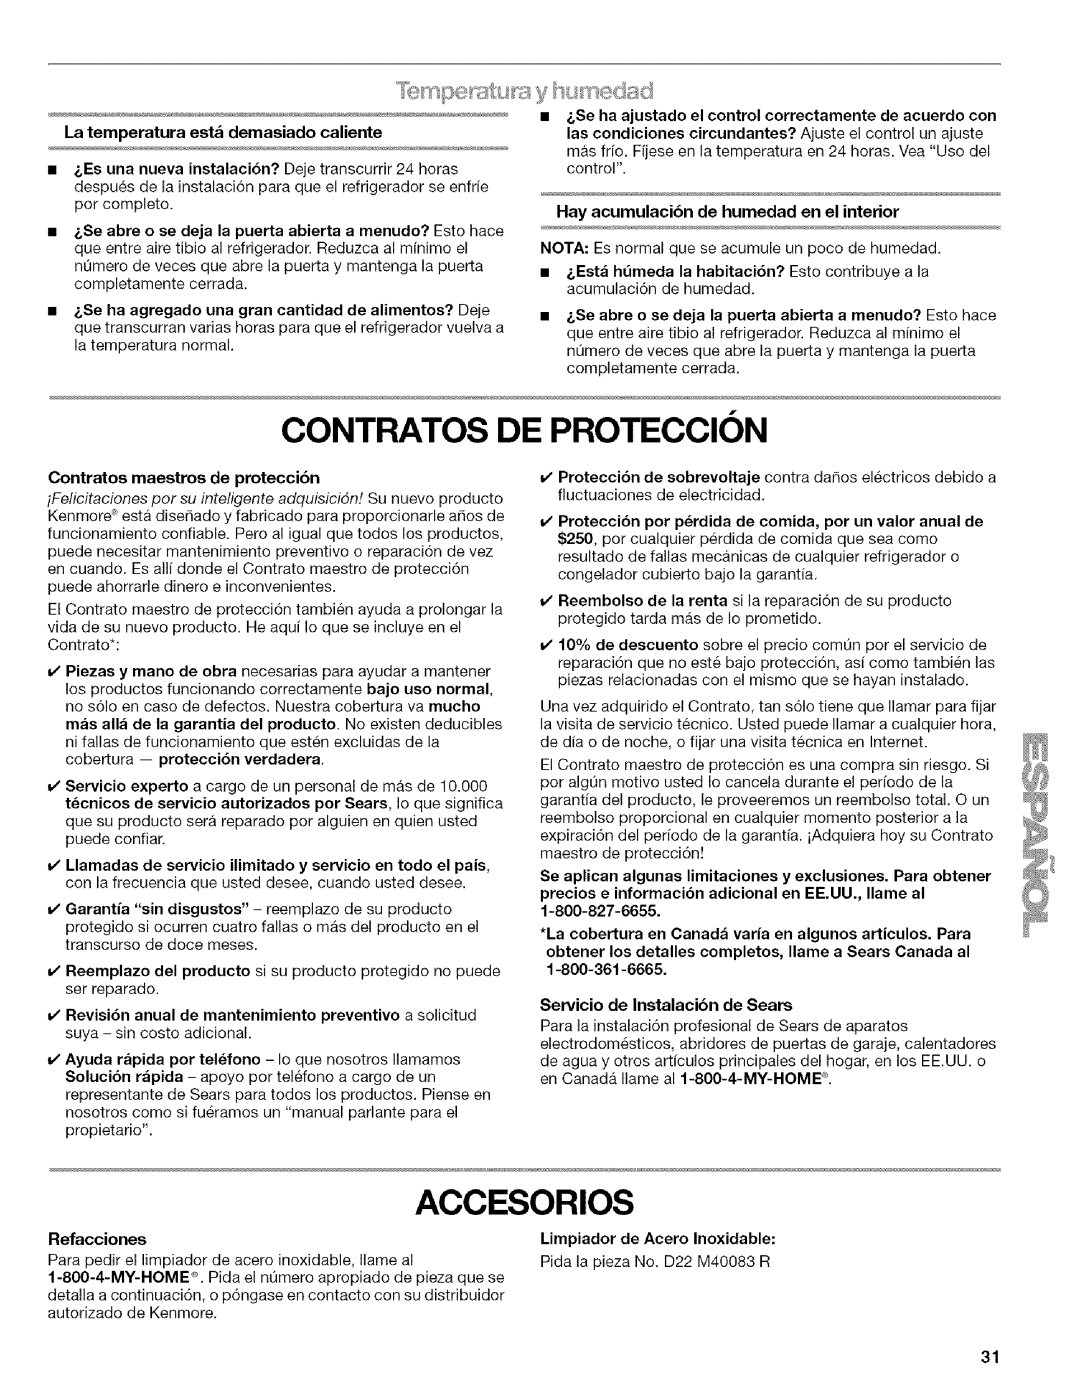 Kenmore w10144349A manual CONTRATOS DE PROTECClON, Accesorios, Hay acumulacibn de humedad en el interior 